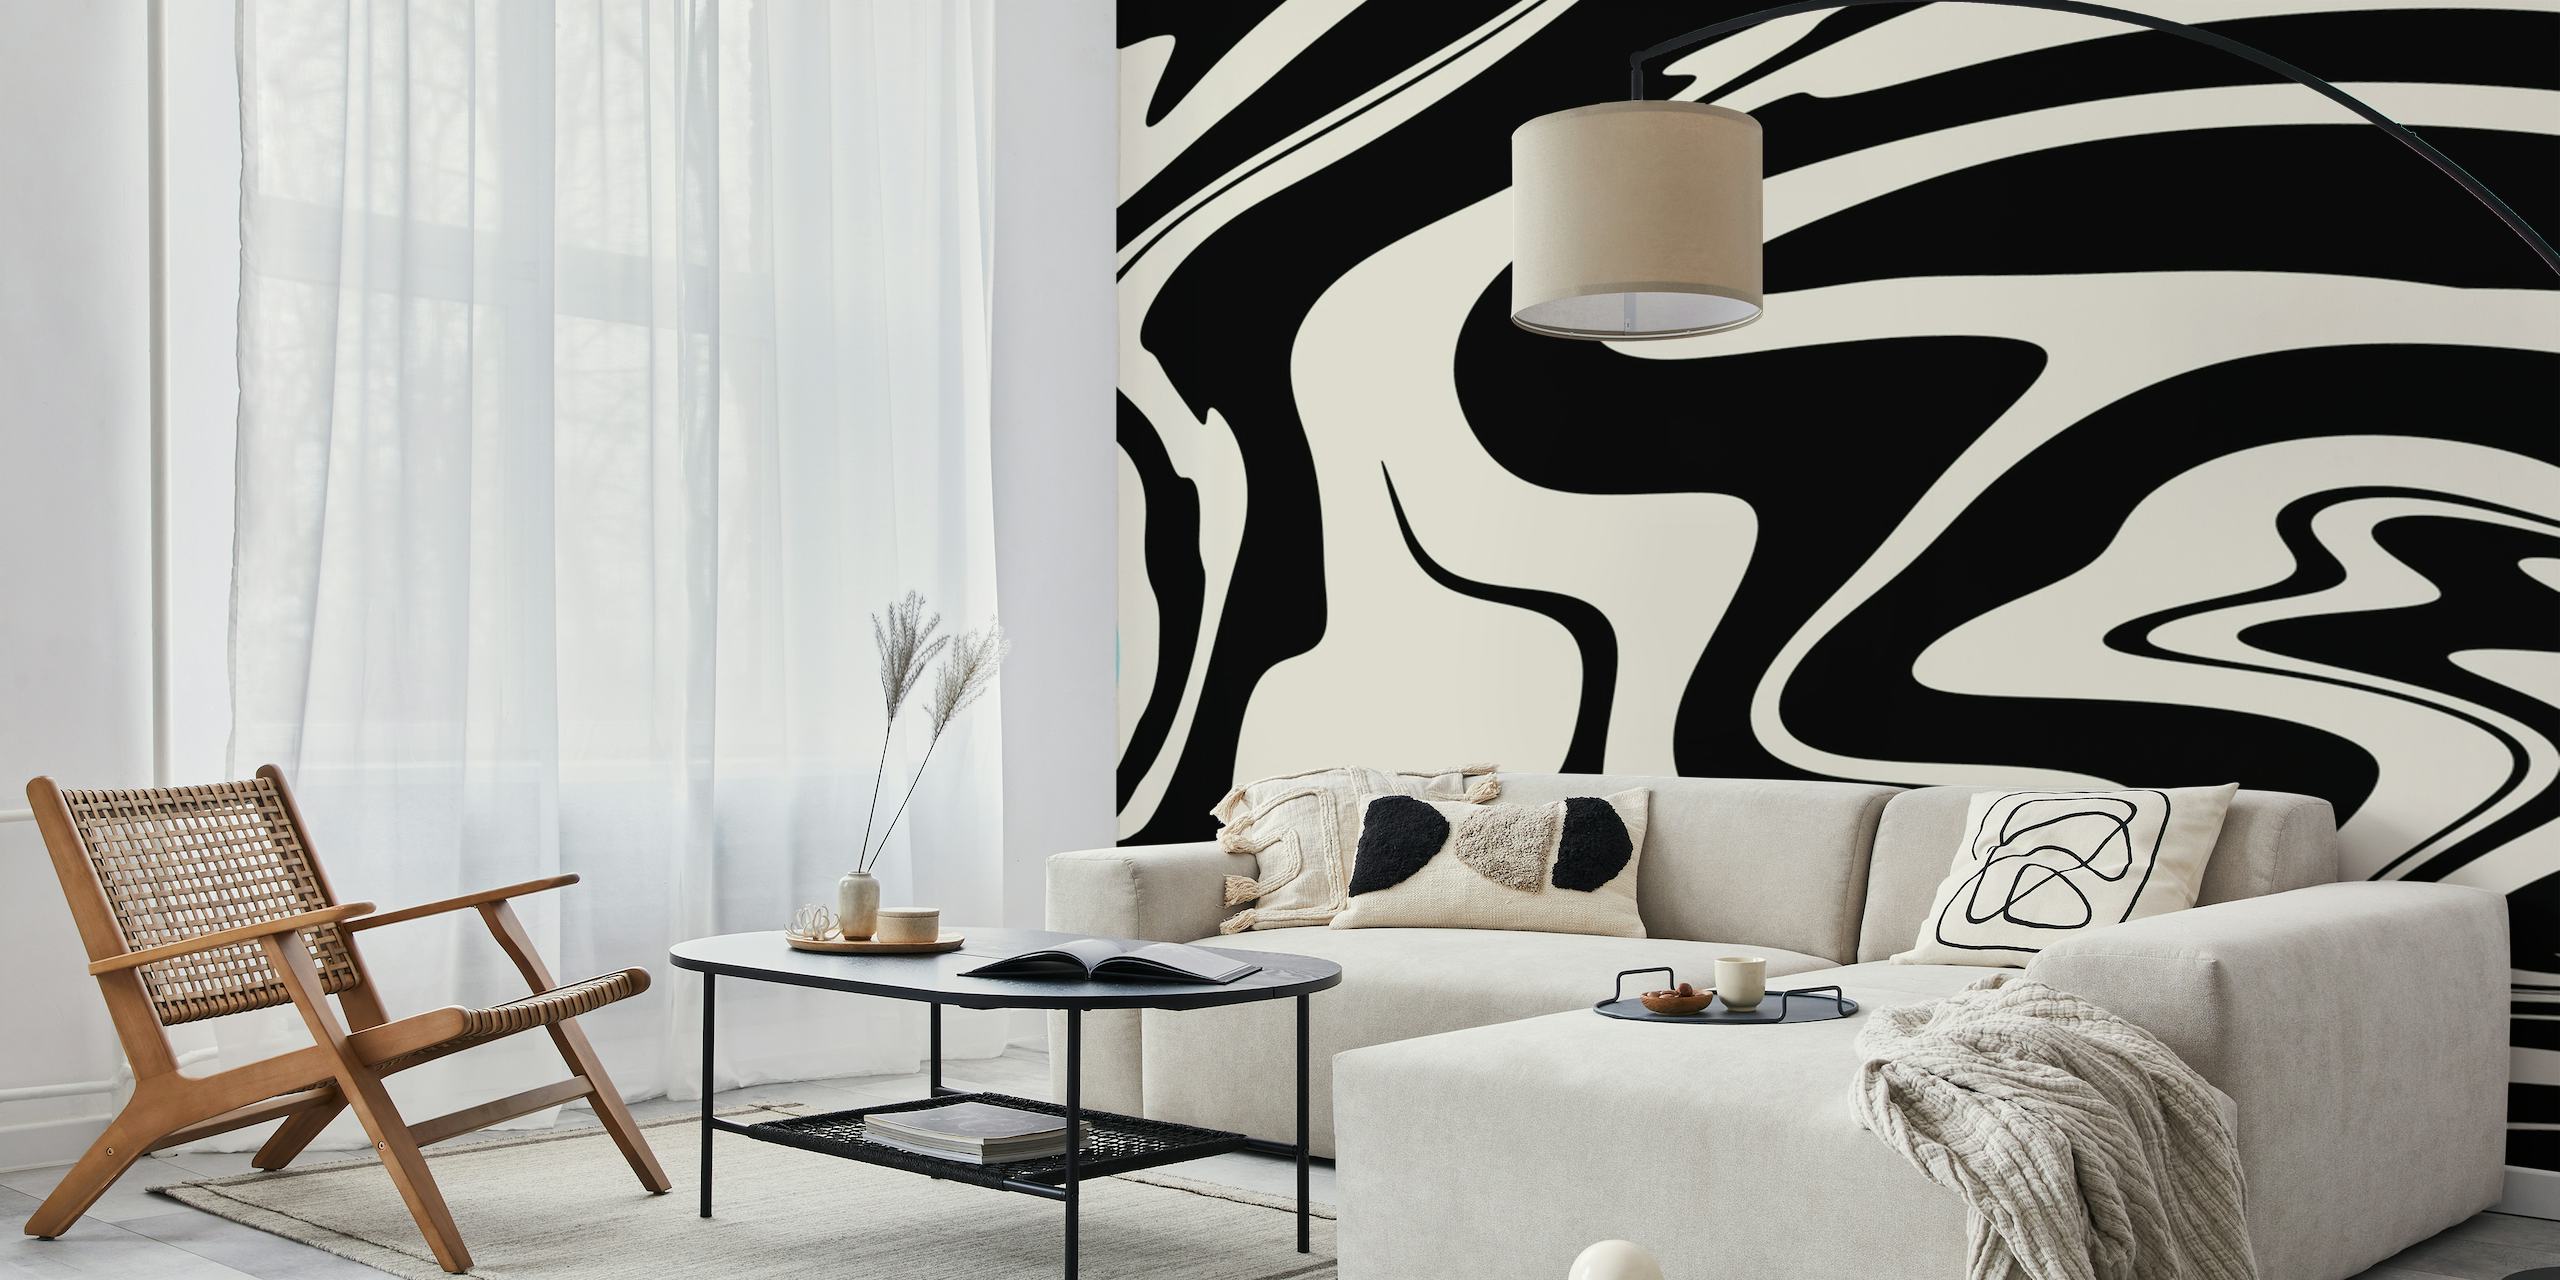 Design abstrato em preto e branco que lembra o estilo retrô glam para mural de parede.